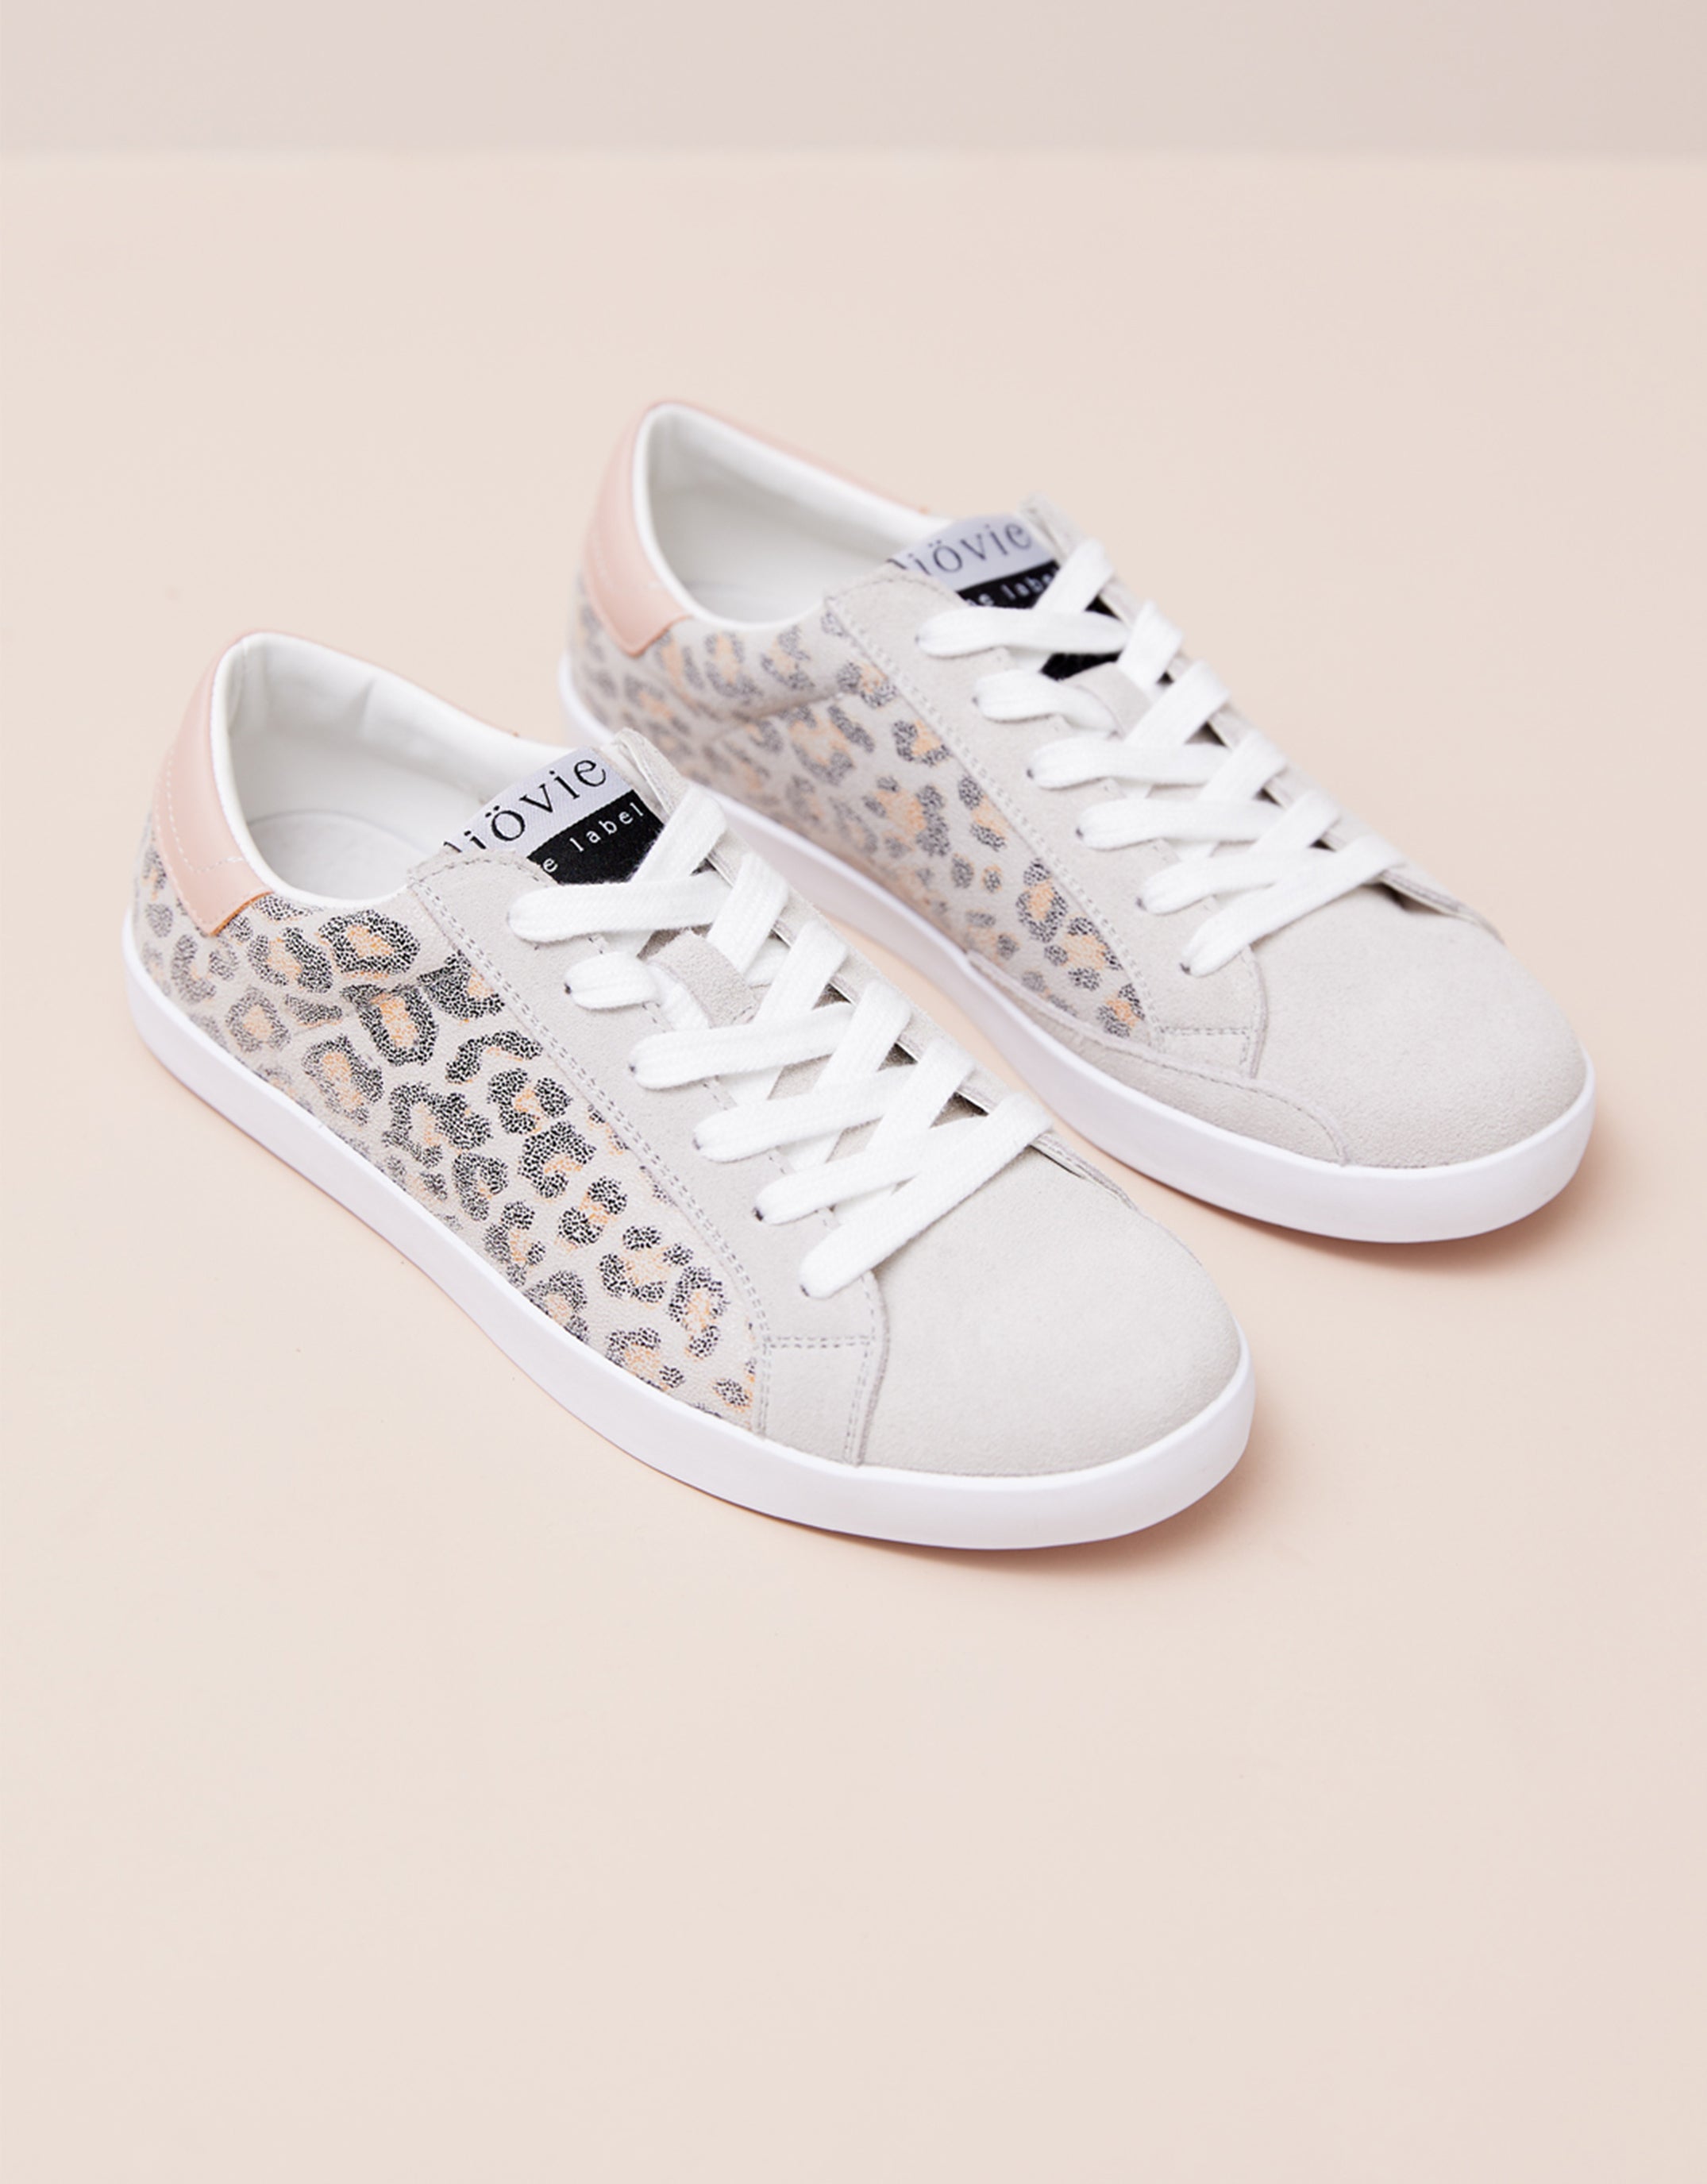 Skyla Sneaker - Leopard Printed Leather